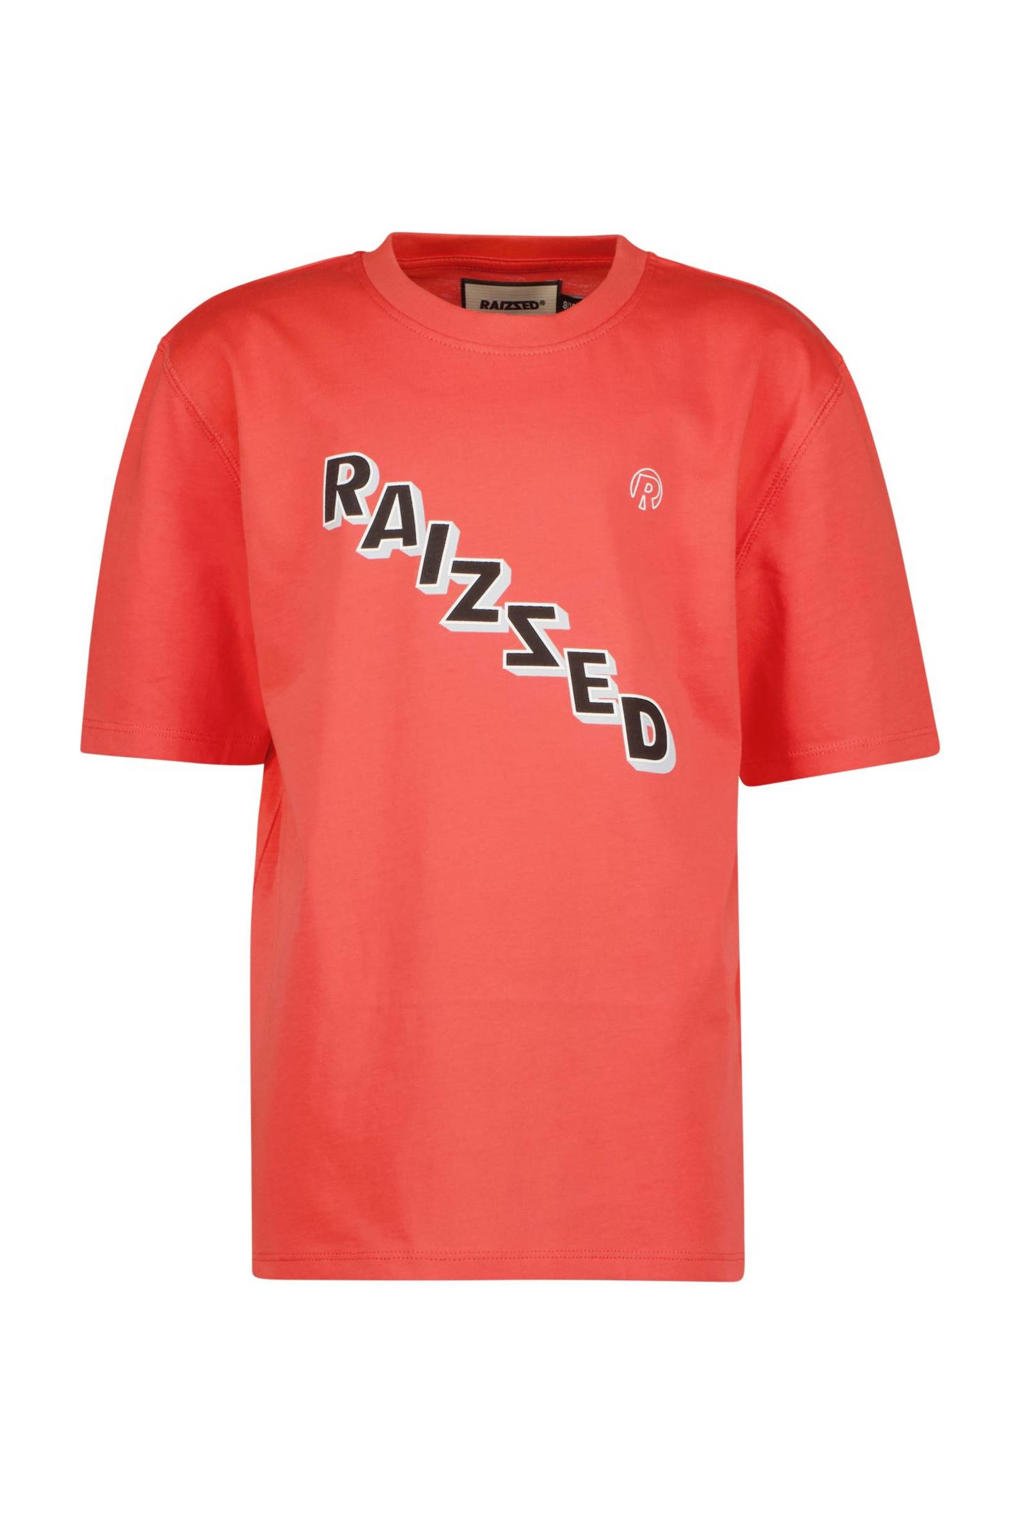 Rode jongens Raizzed T-shirt Stanton met logo dessin, korte mouwen en ronde hals